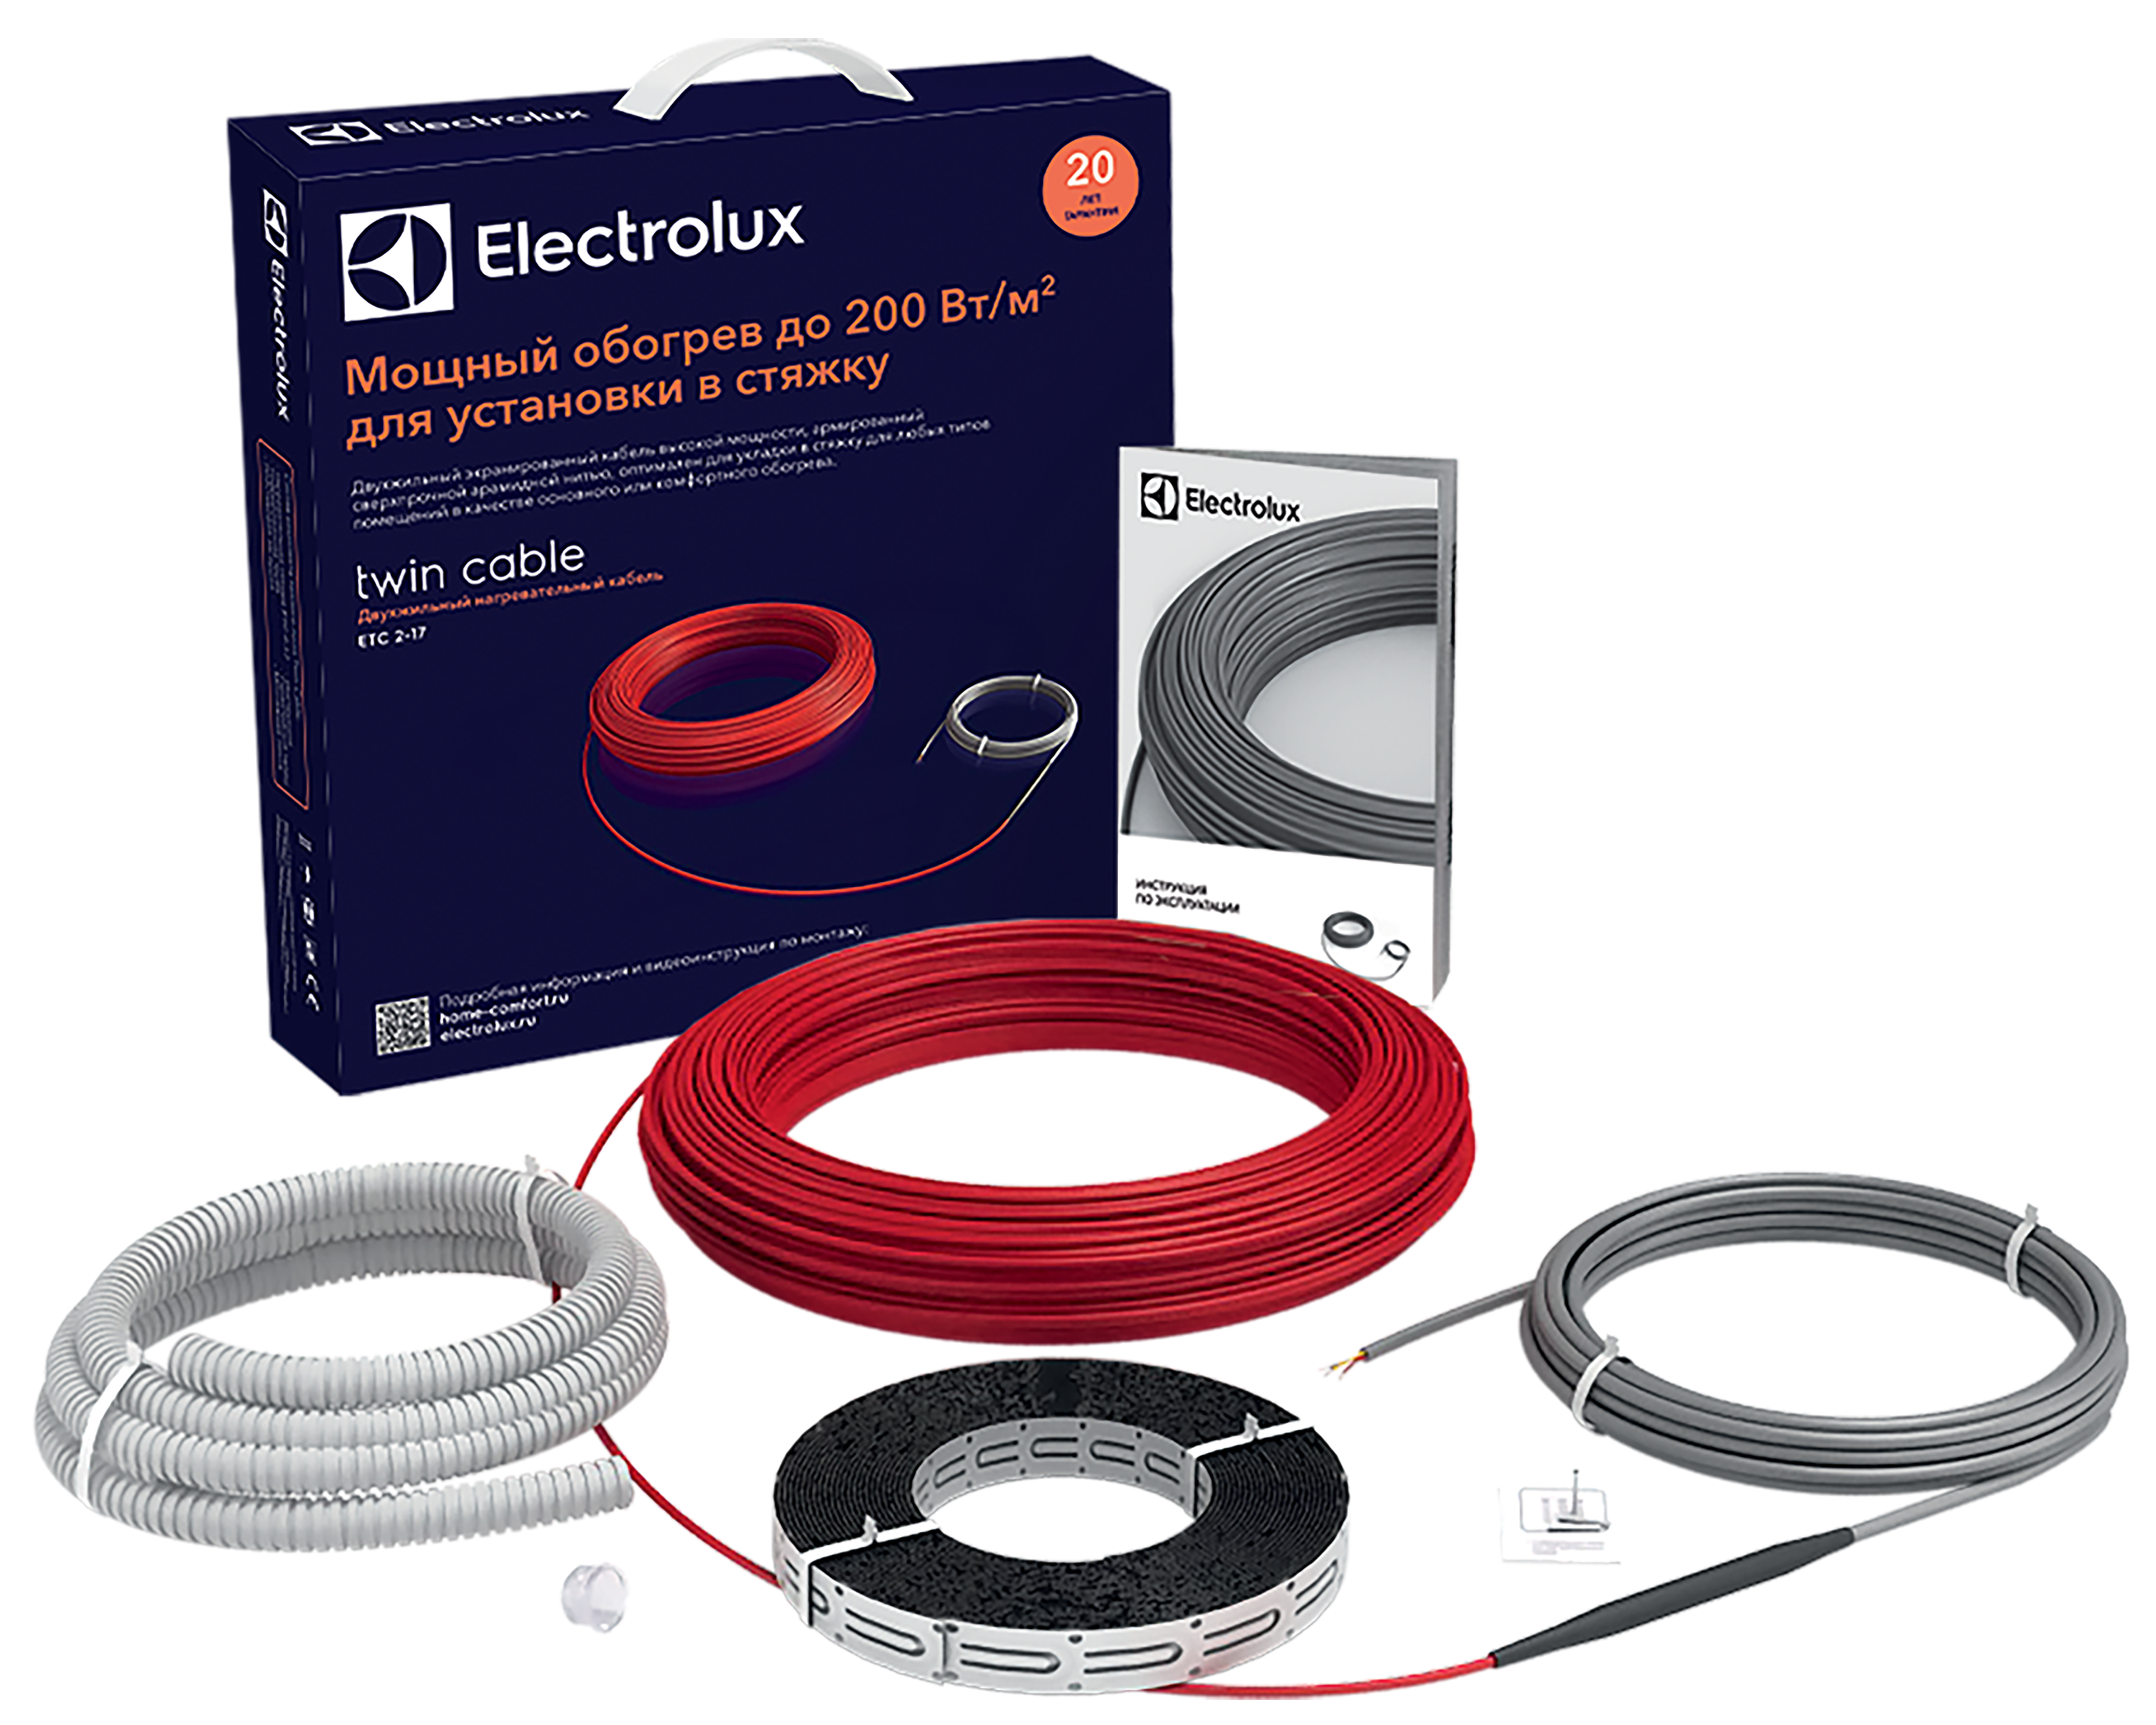 Теплый пол Electrolux под линолеум Electrolux Twin Cable ETC 2-17-1200